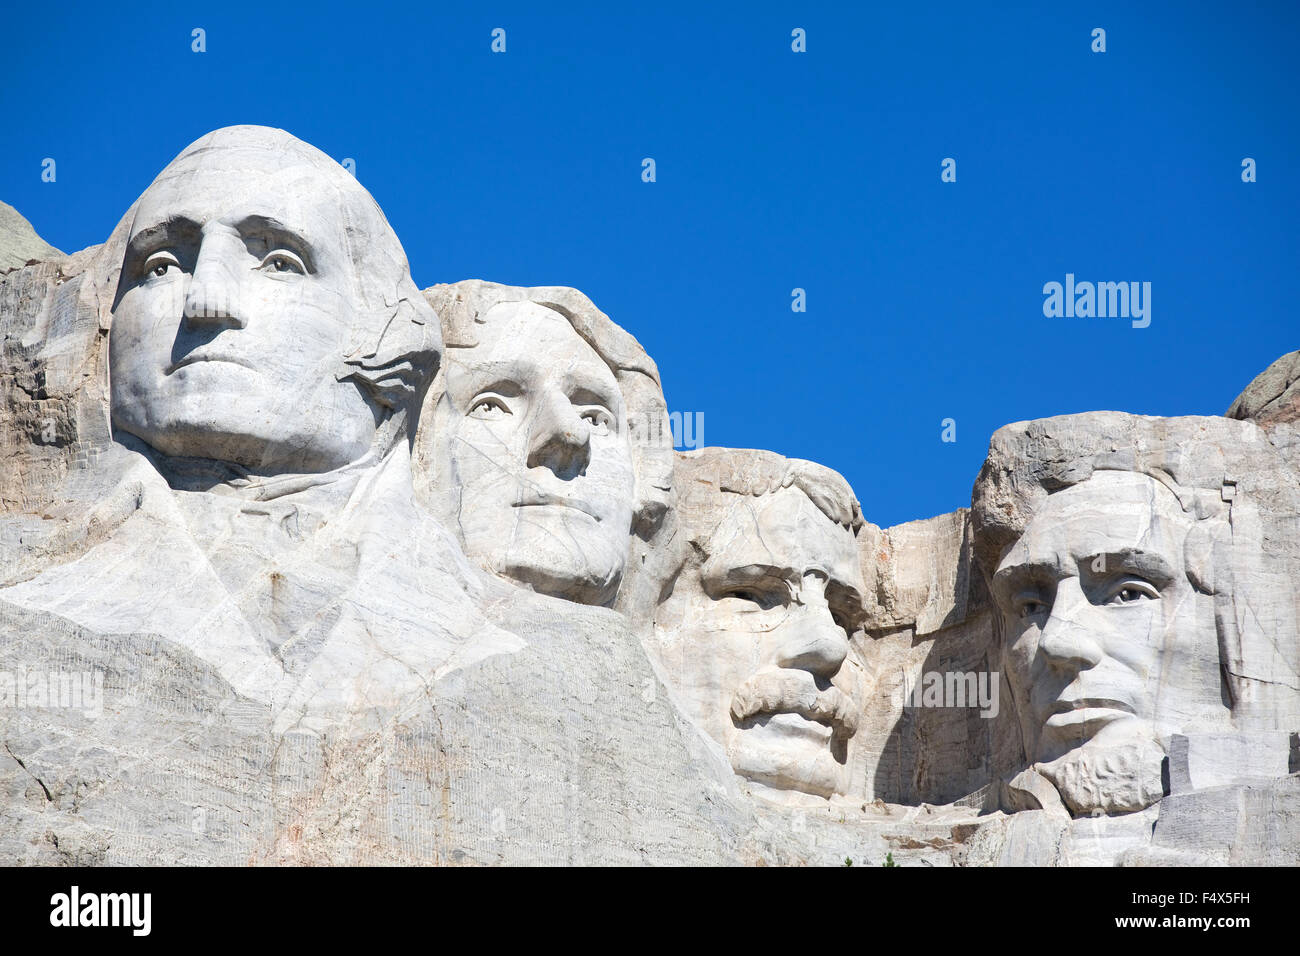 Mt. Rushmore National Memorial è situato nella parte sud-ovest Dakota del Sud, Stati Uniti d'America. Foto Stock